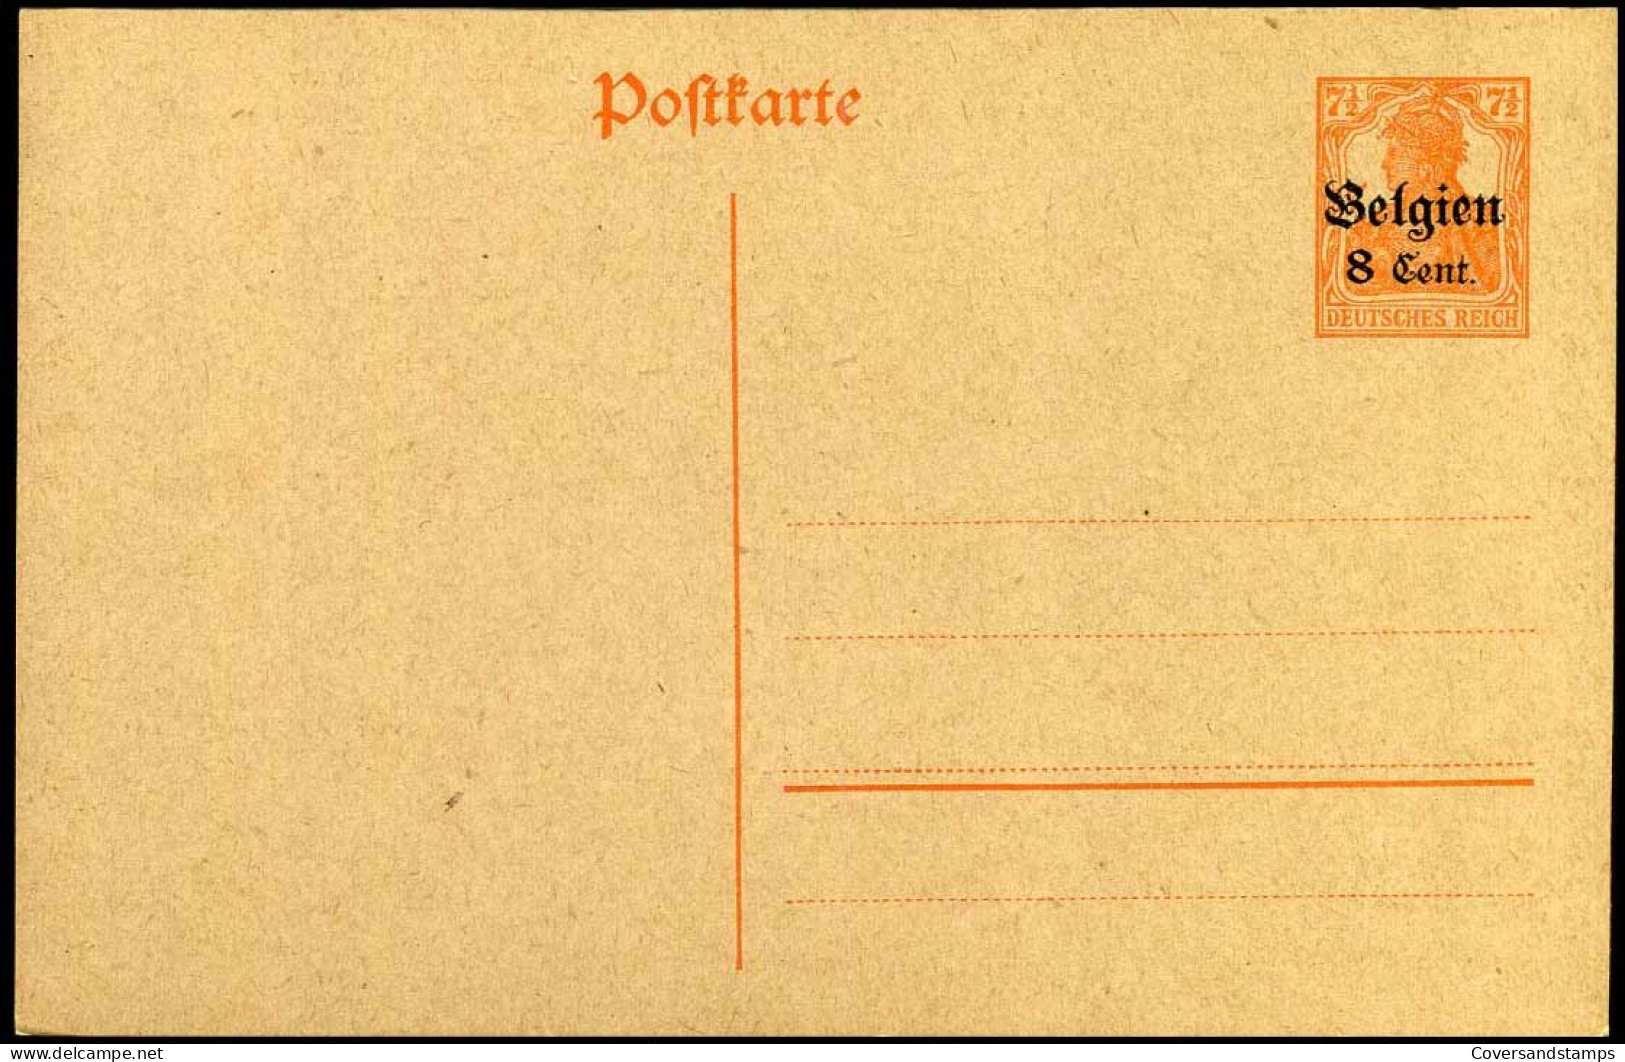 Postkarte - Belgien 8 Cent - Postcards 1909-1934